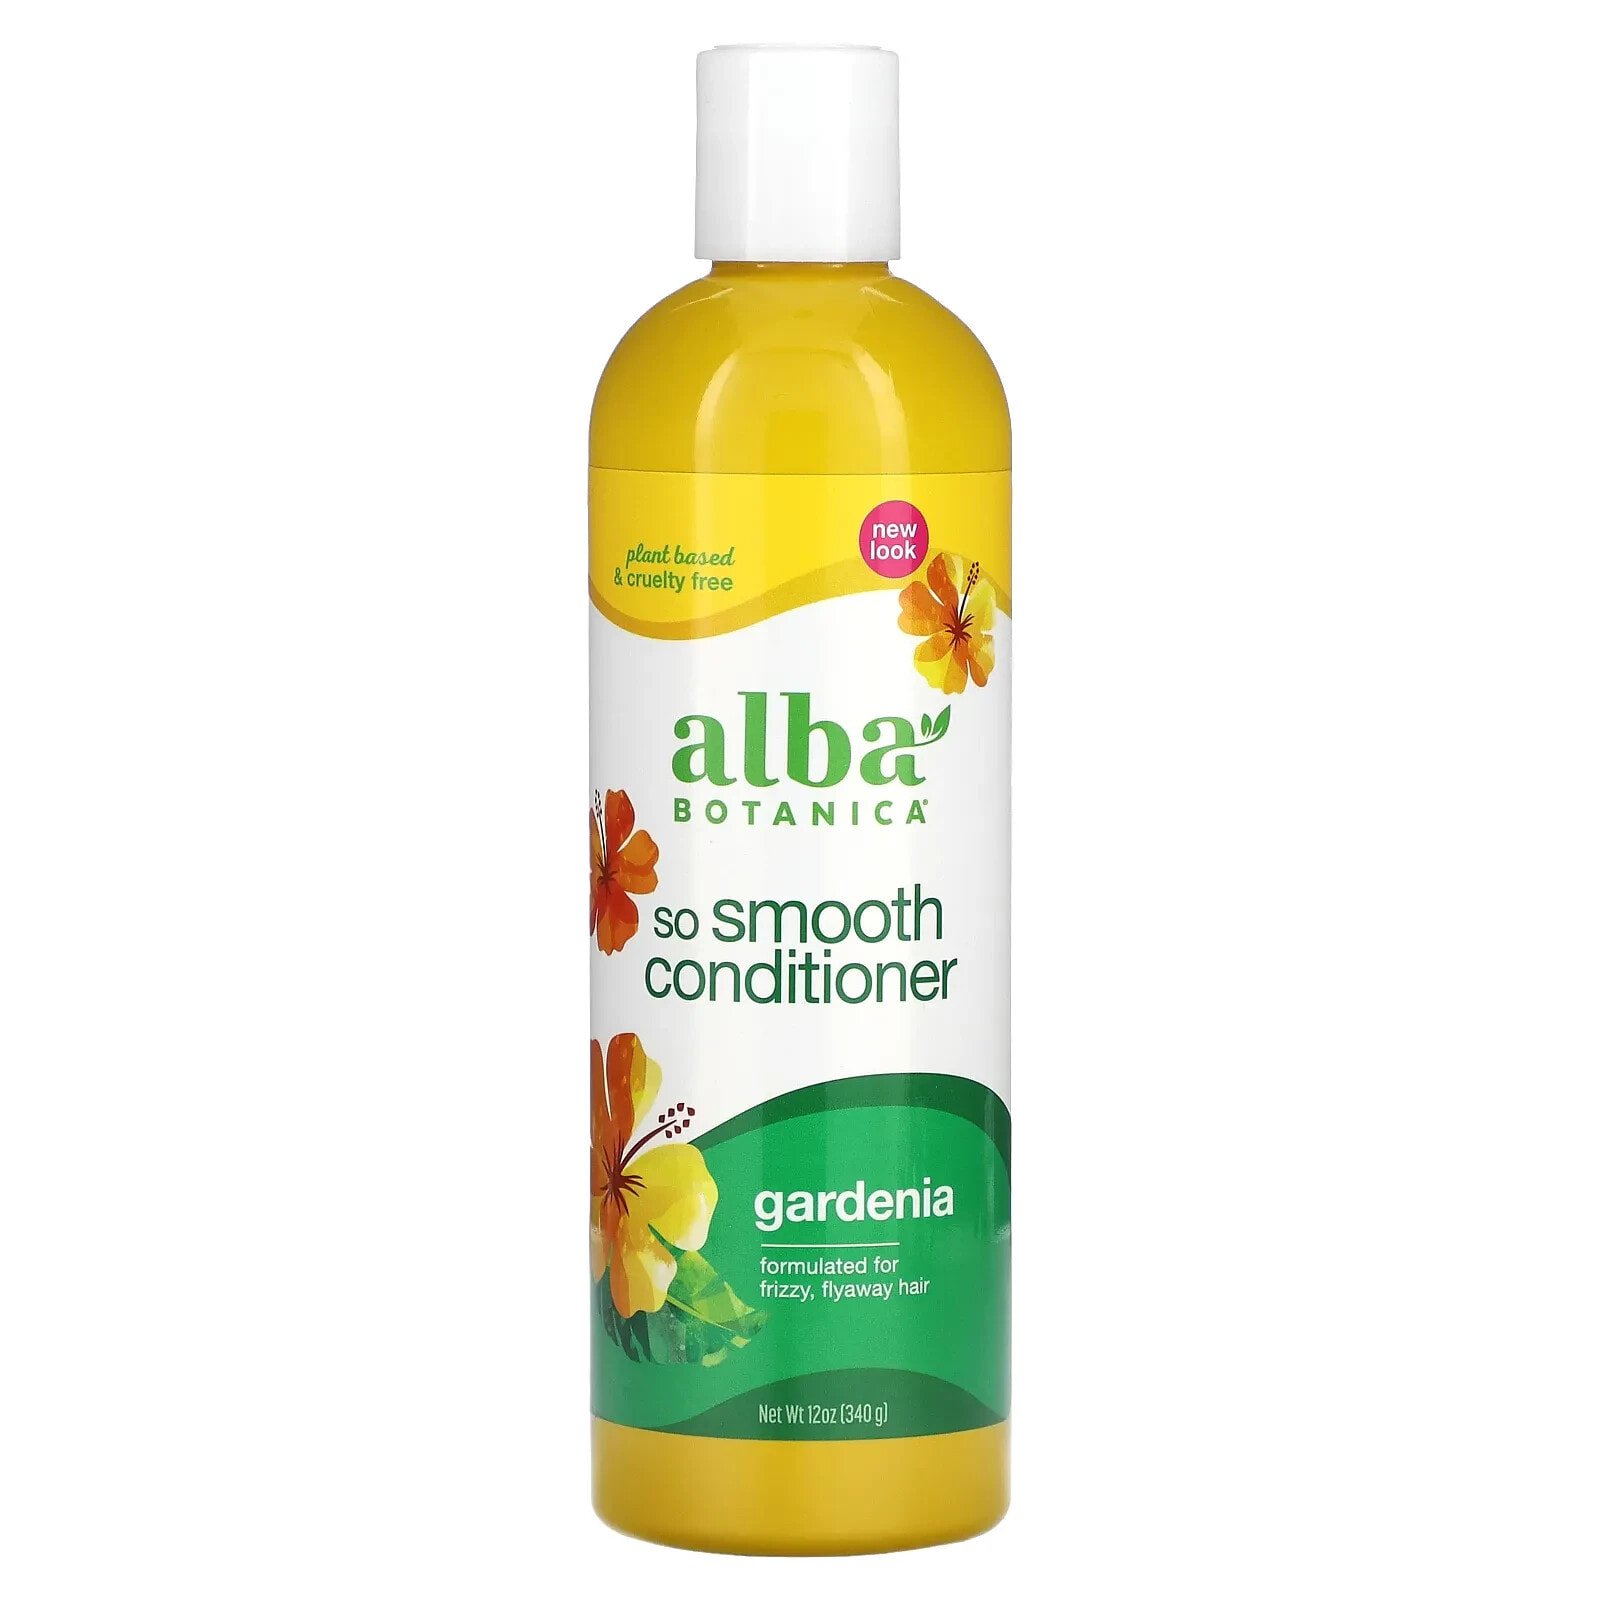 Alba Botanica, So Smooth Conditioner, кондиционер для вьющихся волос, гардения, 340 г (12 унций)